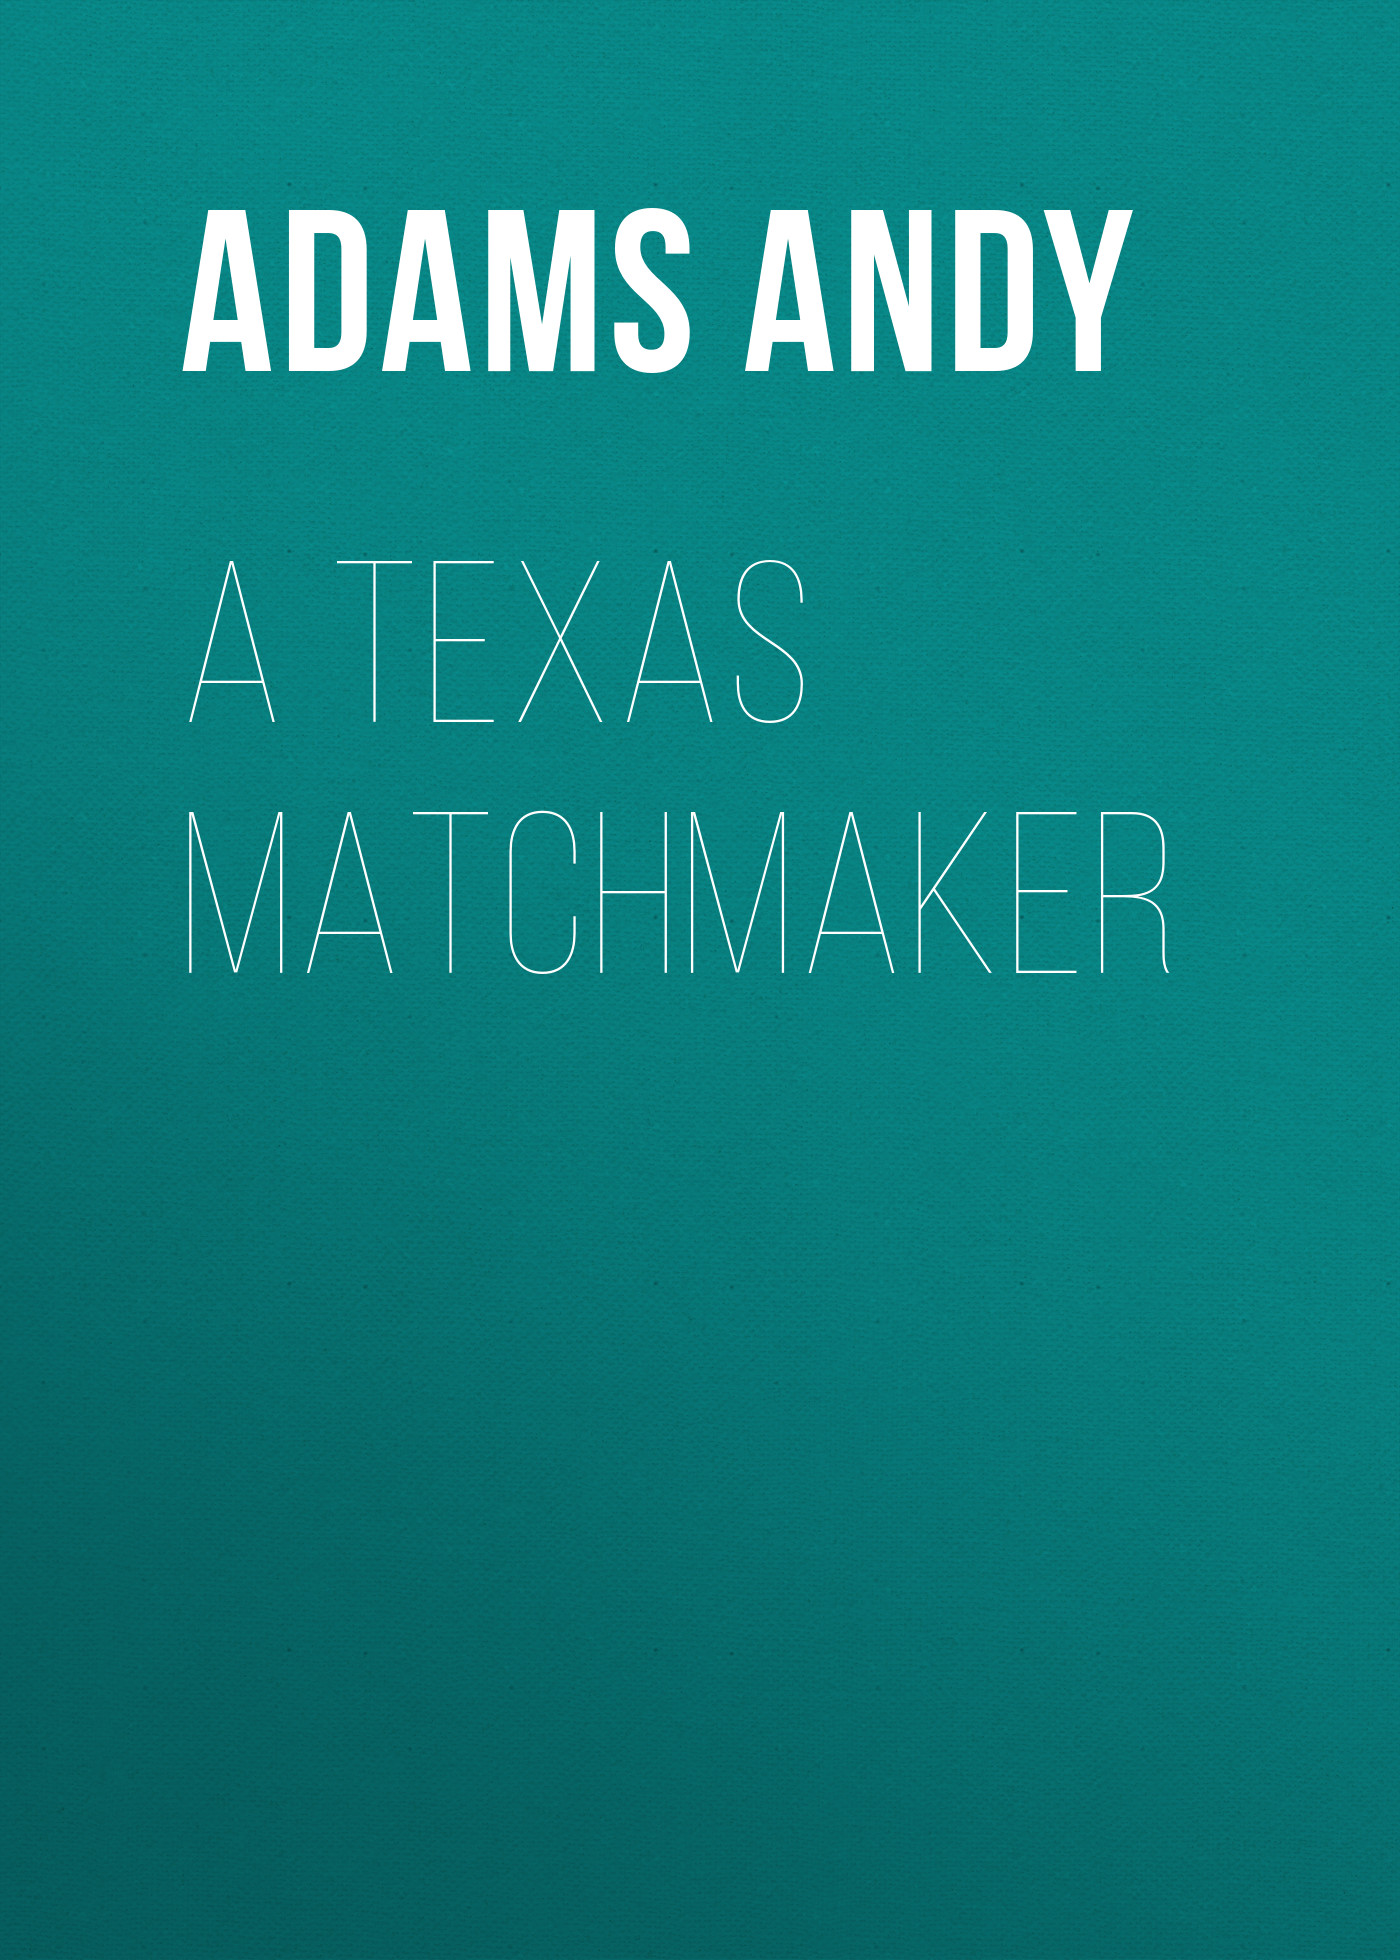 Книга A Texas Matchmaker из серии , созданная Andy Adams, может относится к жанру Зарубежная классика, Зарубежная старинная литература. Стоимость электронной книги A Texas Matchmaker с идентификатором 36364582 составляет 0 руб.